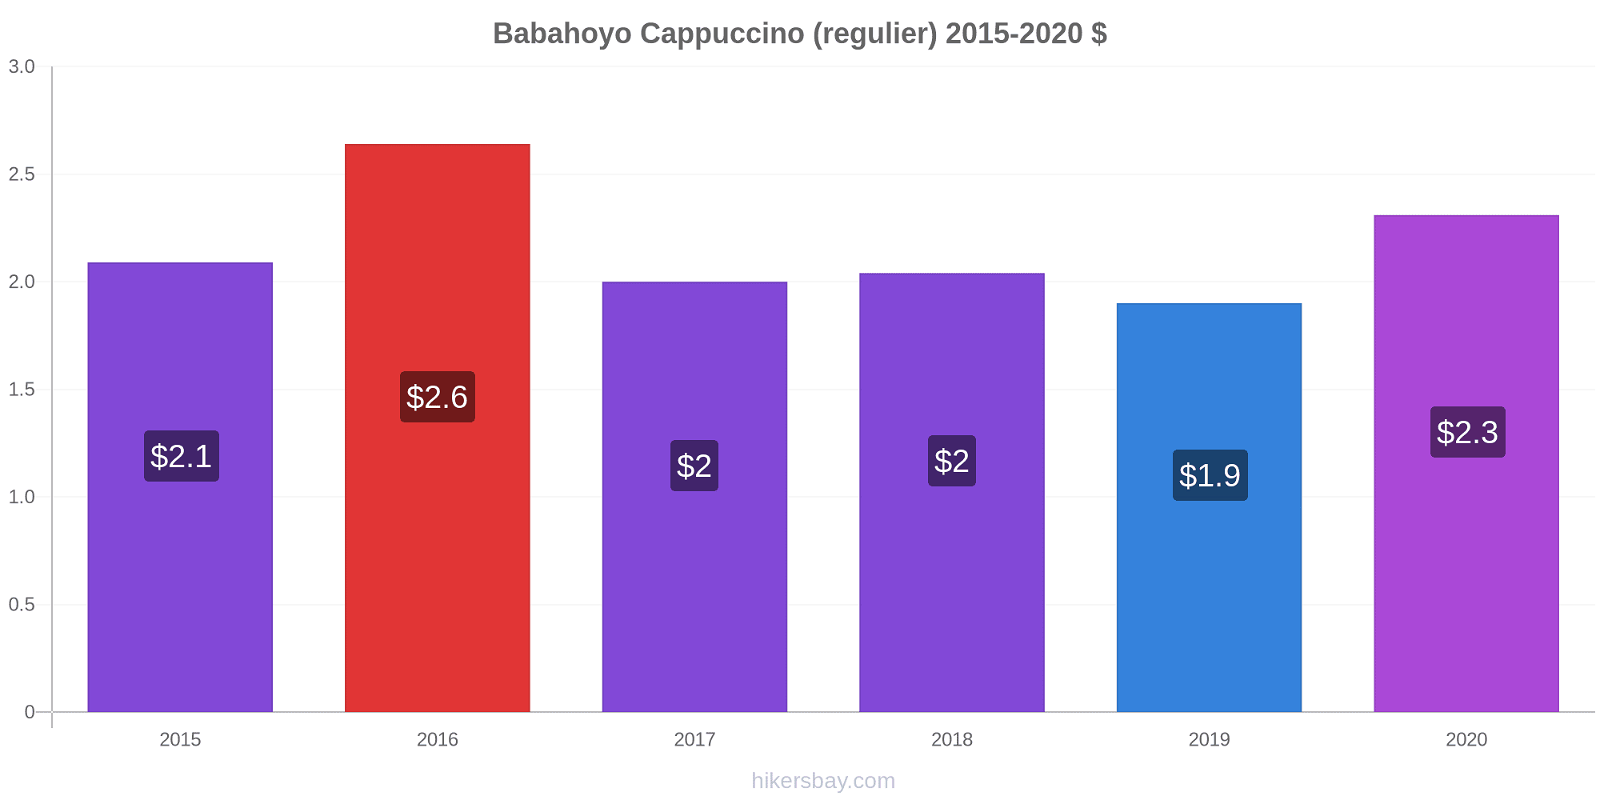 Babahoyo prijswijzigingen Cappuccino (regelmatige) hikersbay.com